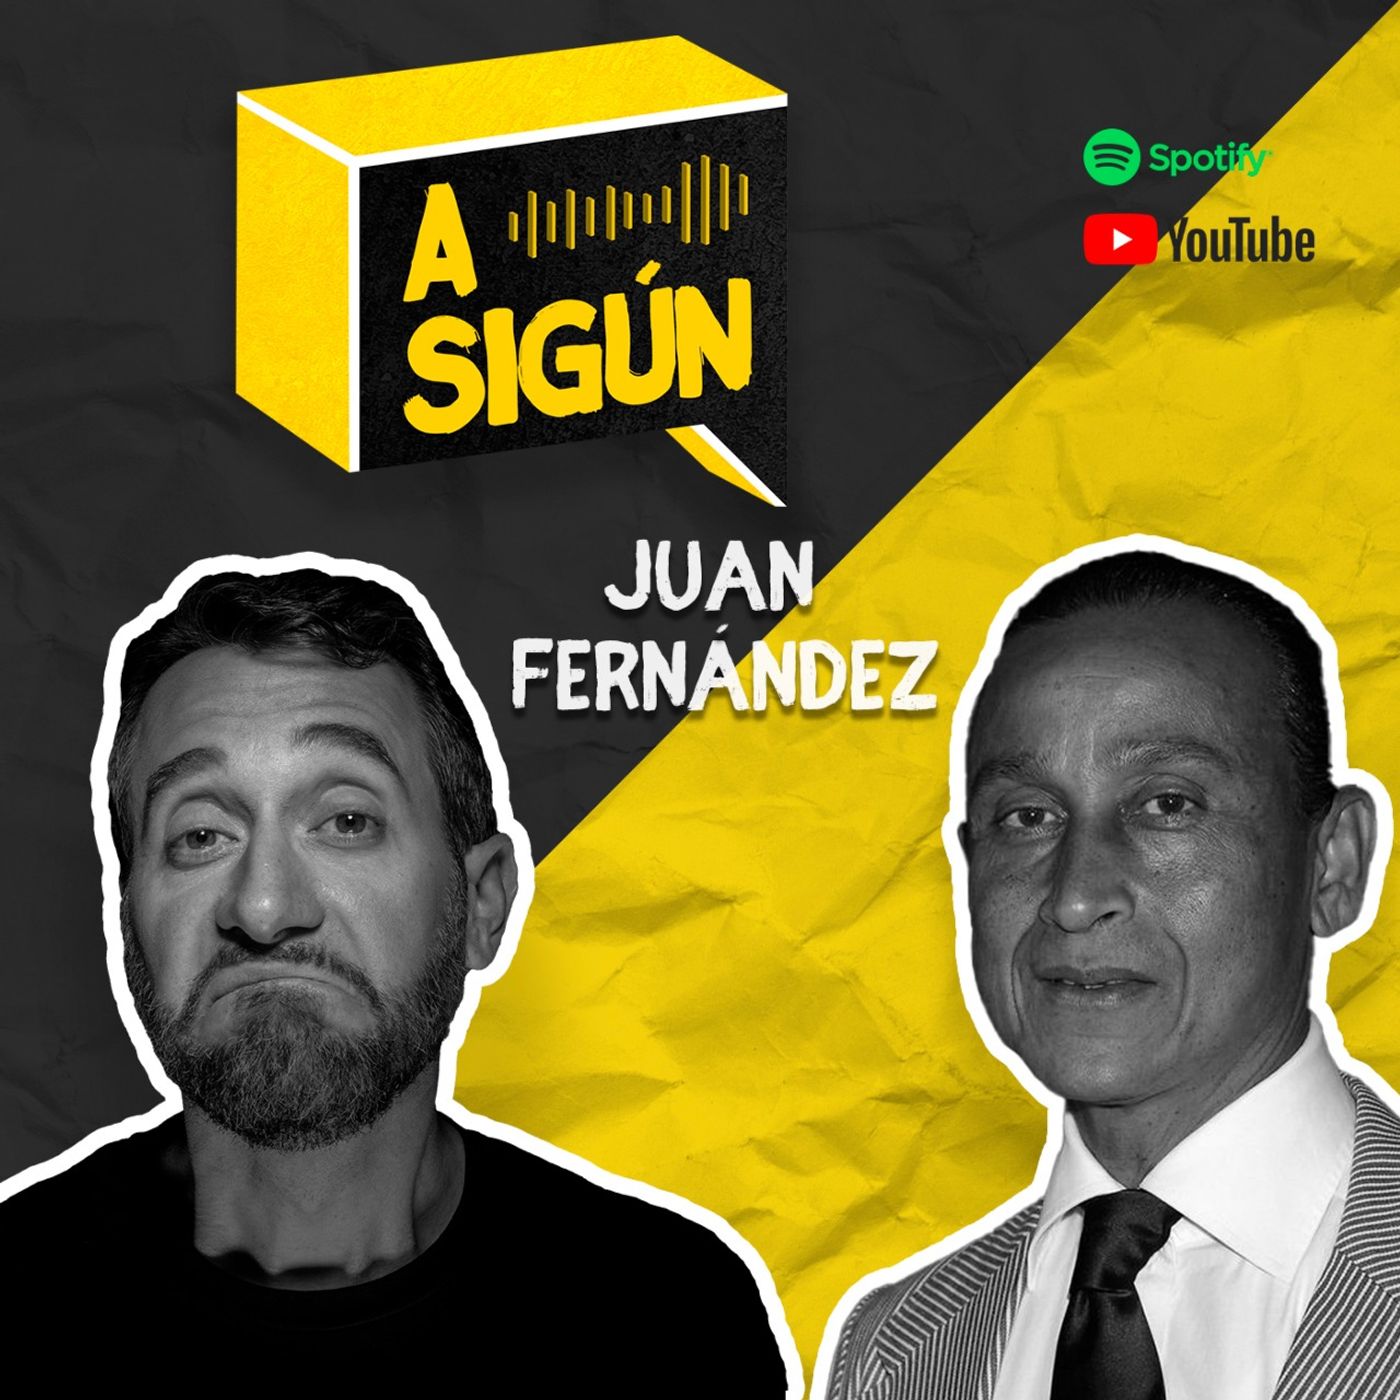 037. A SIGÚN: Juan Fernández